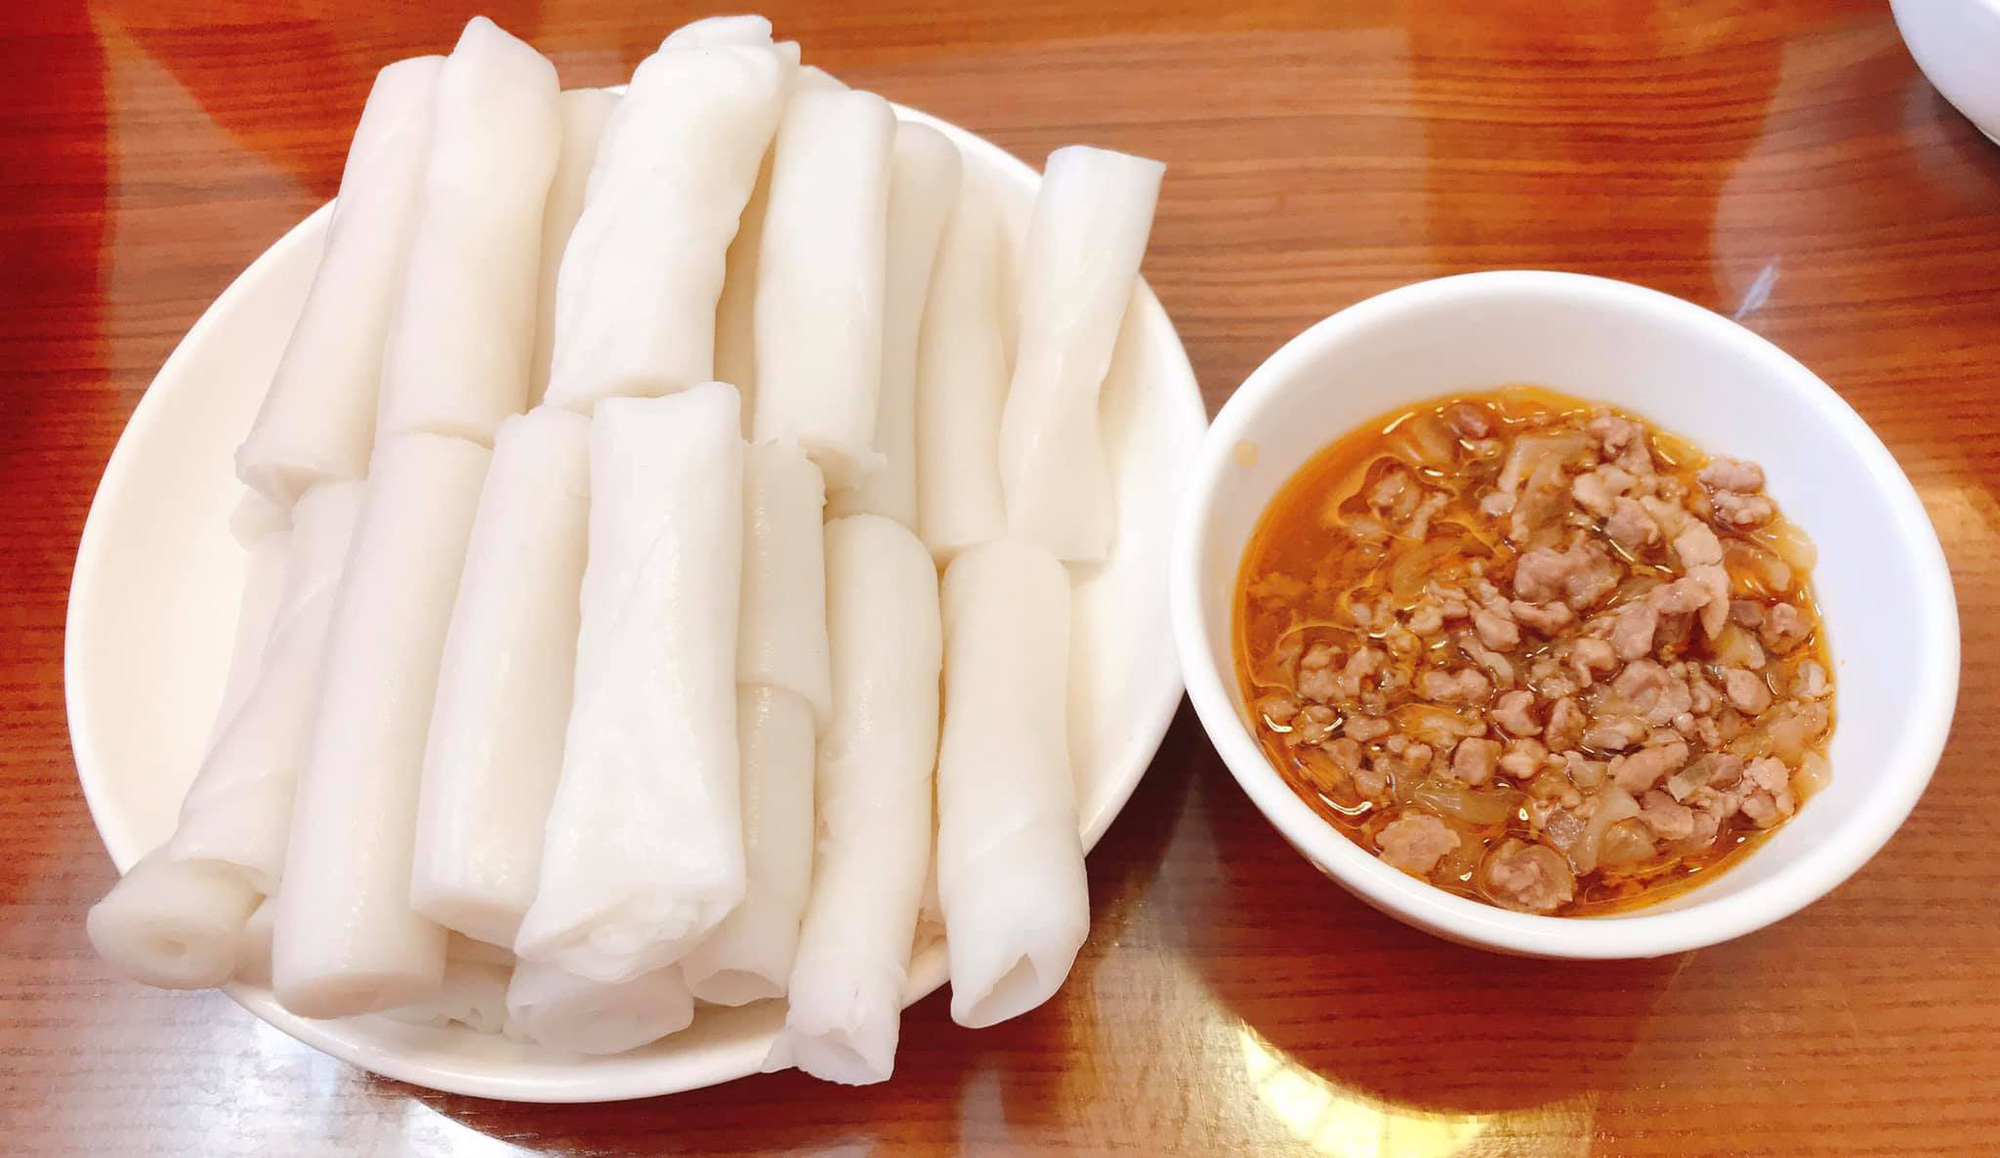 Ở Quảng Ninh có đặc sản bánh gật gù độc lạ, ăn theo cân rồi cứ gật gà gật gù tấm tắc khen ngon - Ảnh 3.